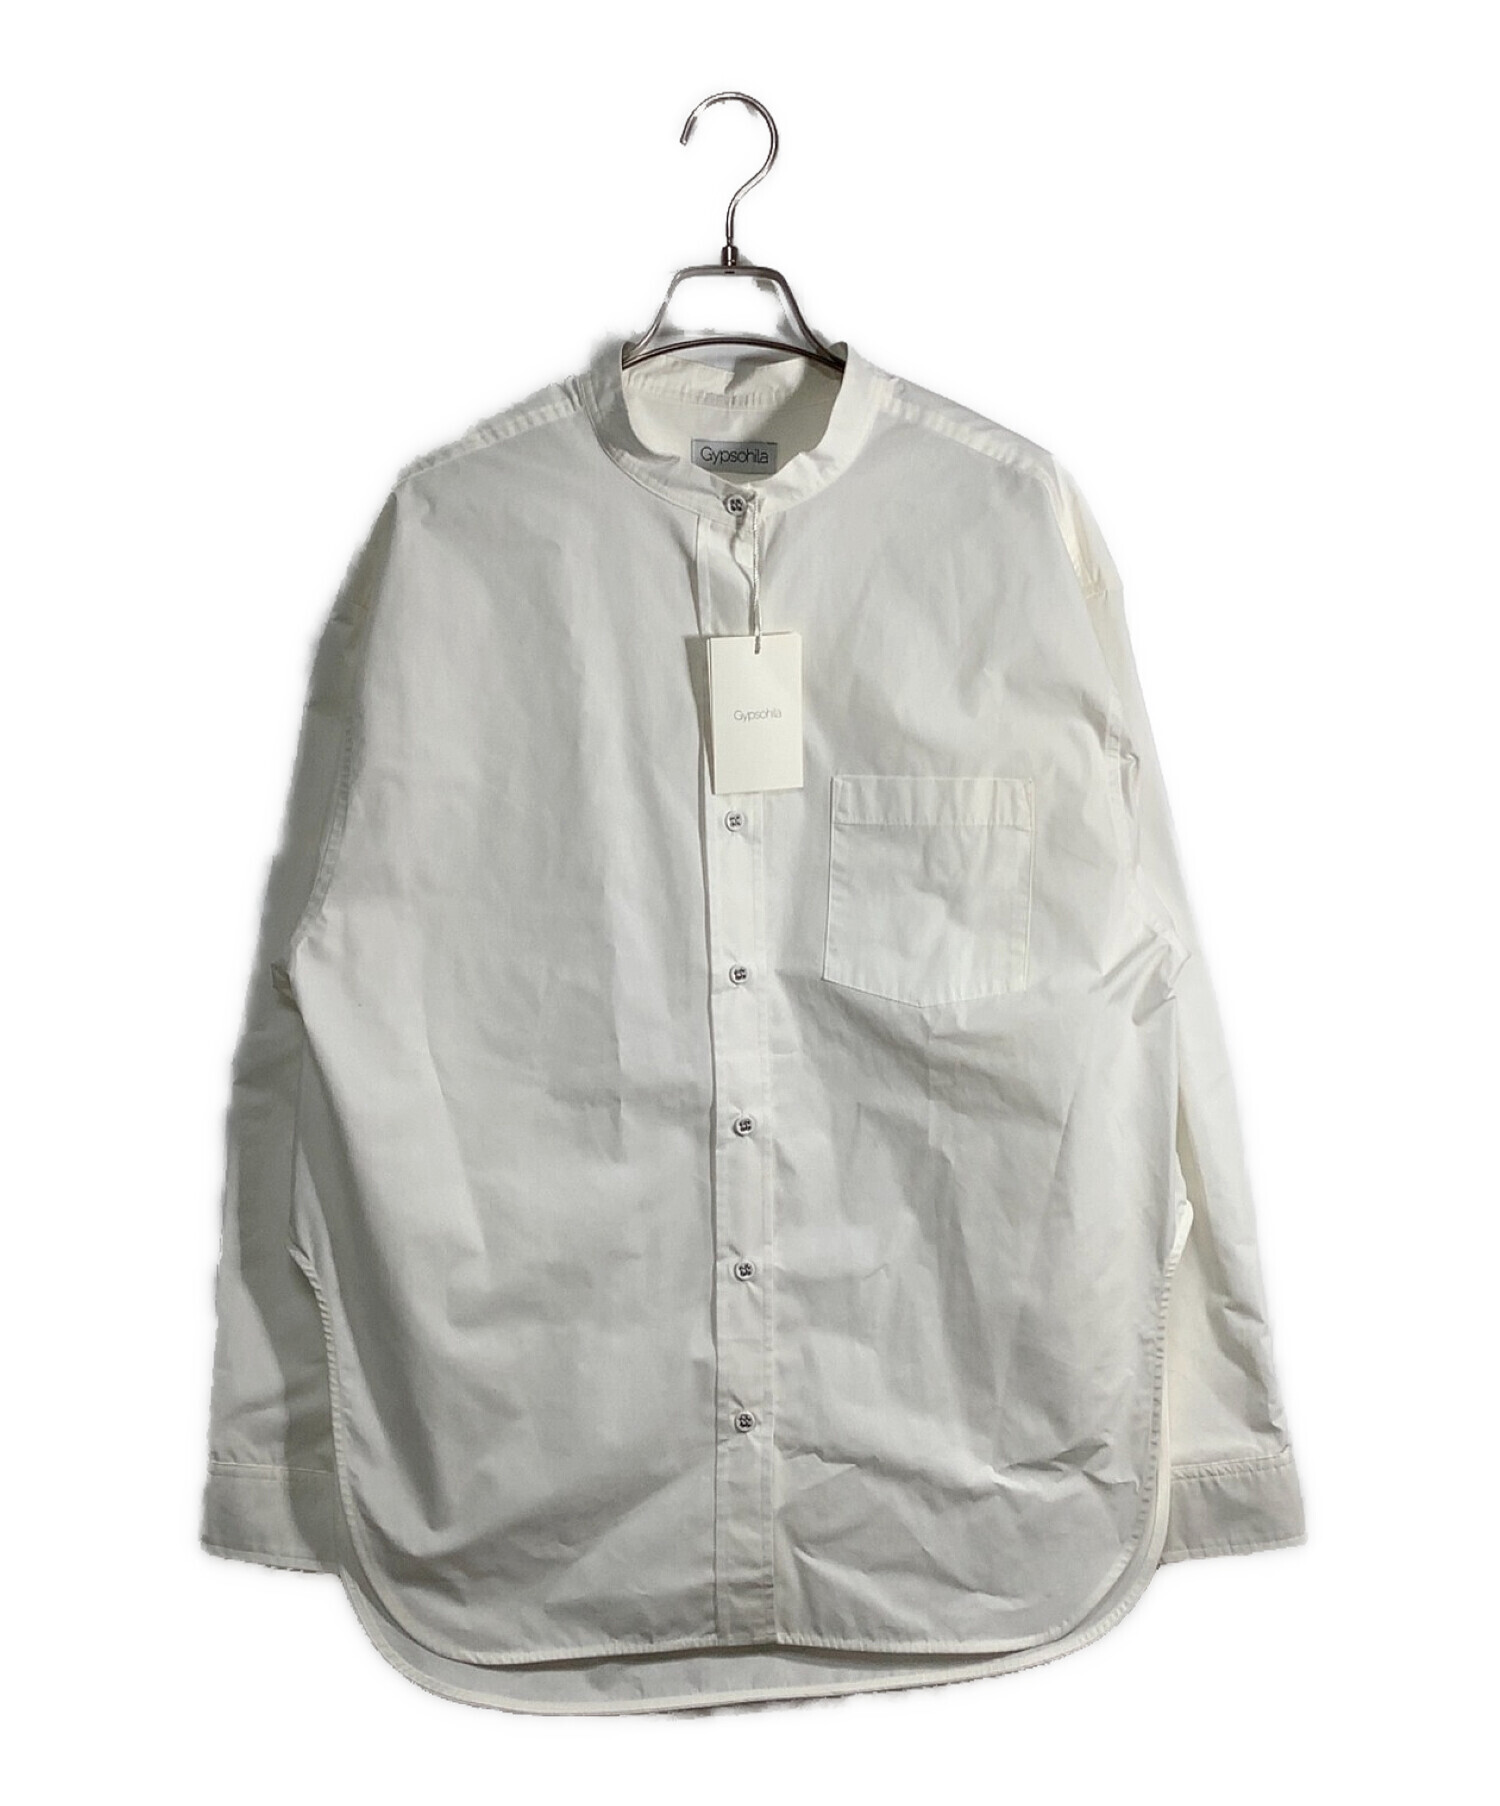 Gypsohila (ジプソフィア) ノーカラーシャツ ホワイト サイズ:FREE 未使用品